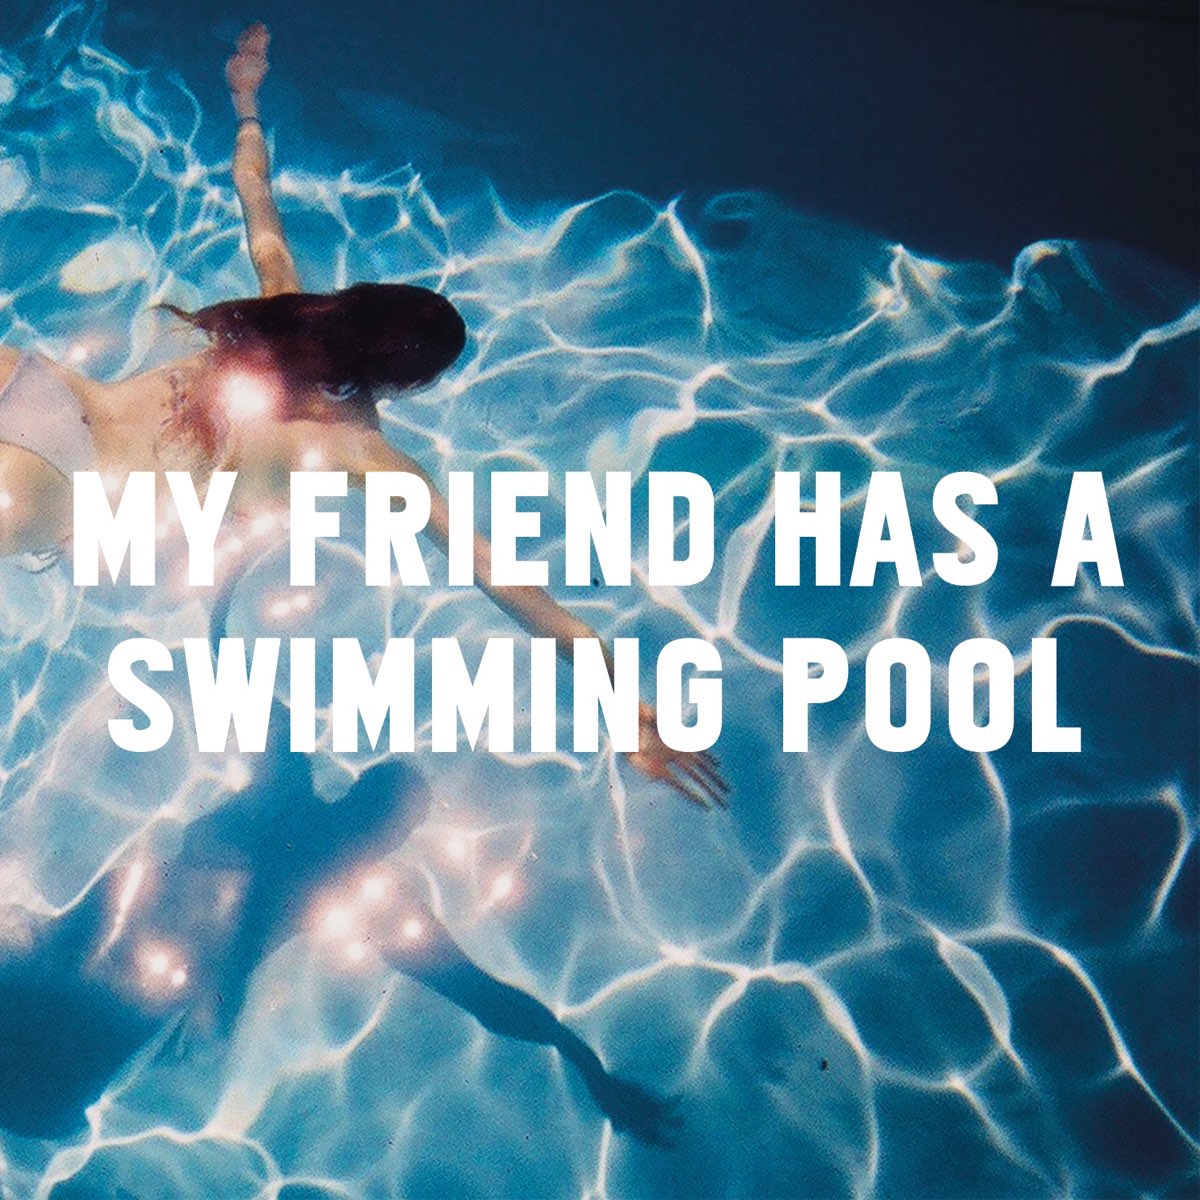 Swimming Pool Song. My friend has a swimming Pool трек. Swimming Pool альбом. Swimming Pool обложка песни. Свиминг пул песня